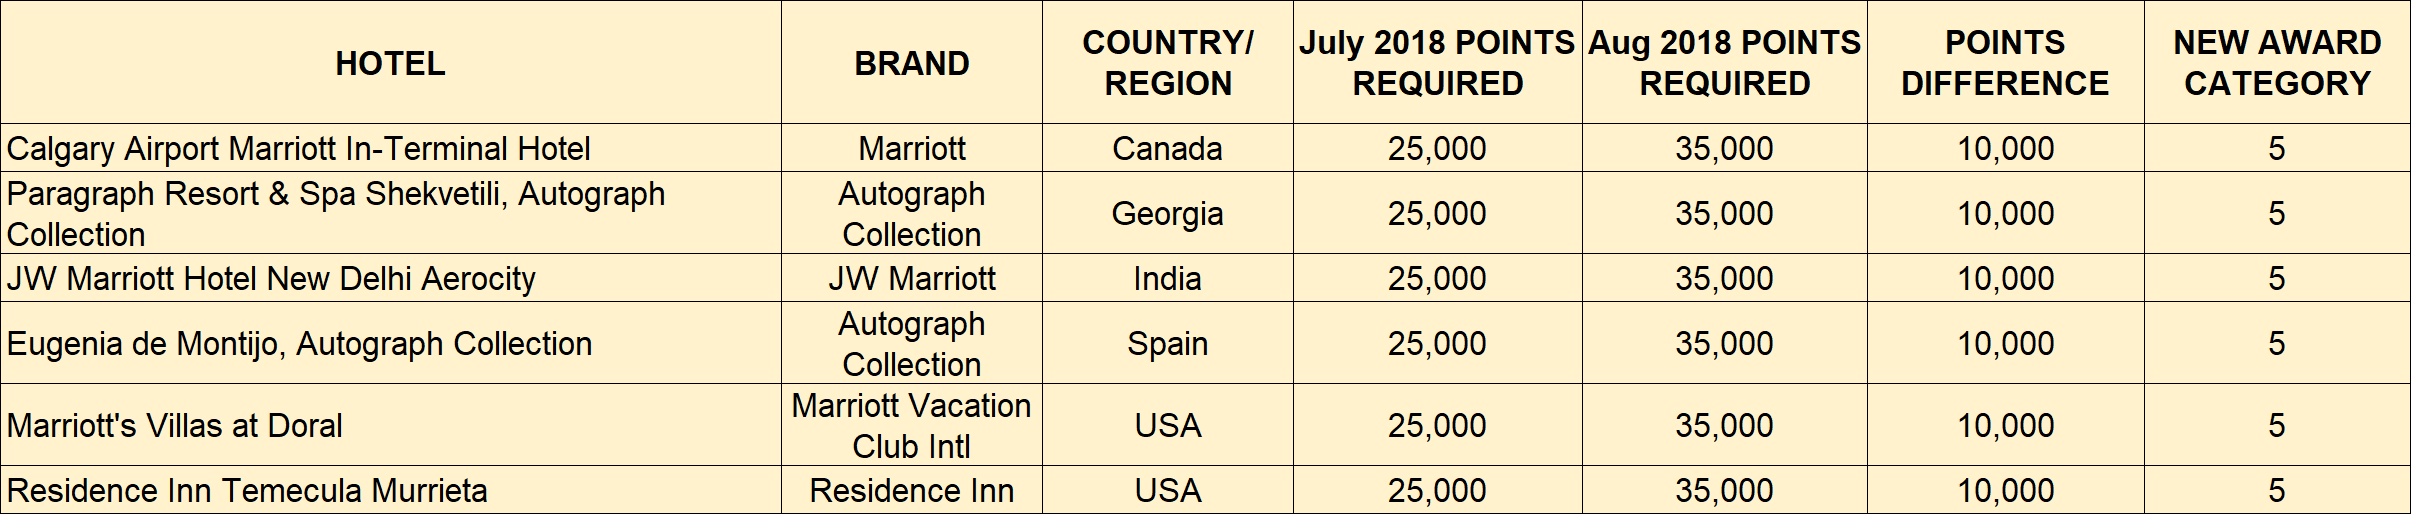 Marriott Rewards Chart August 2018